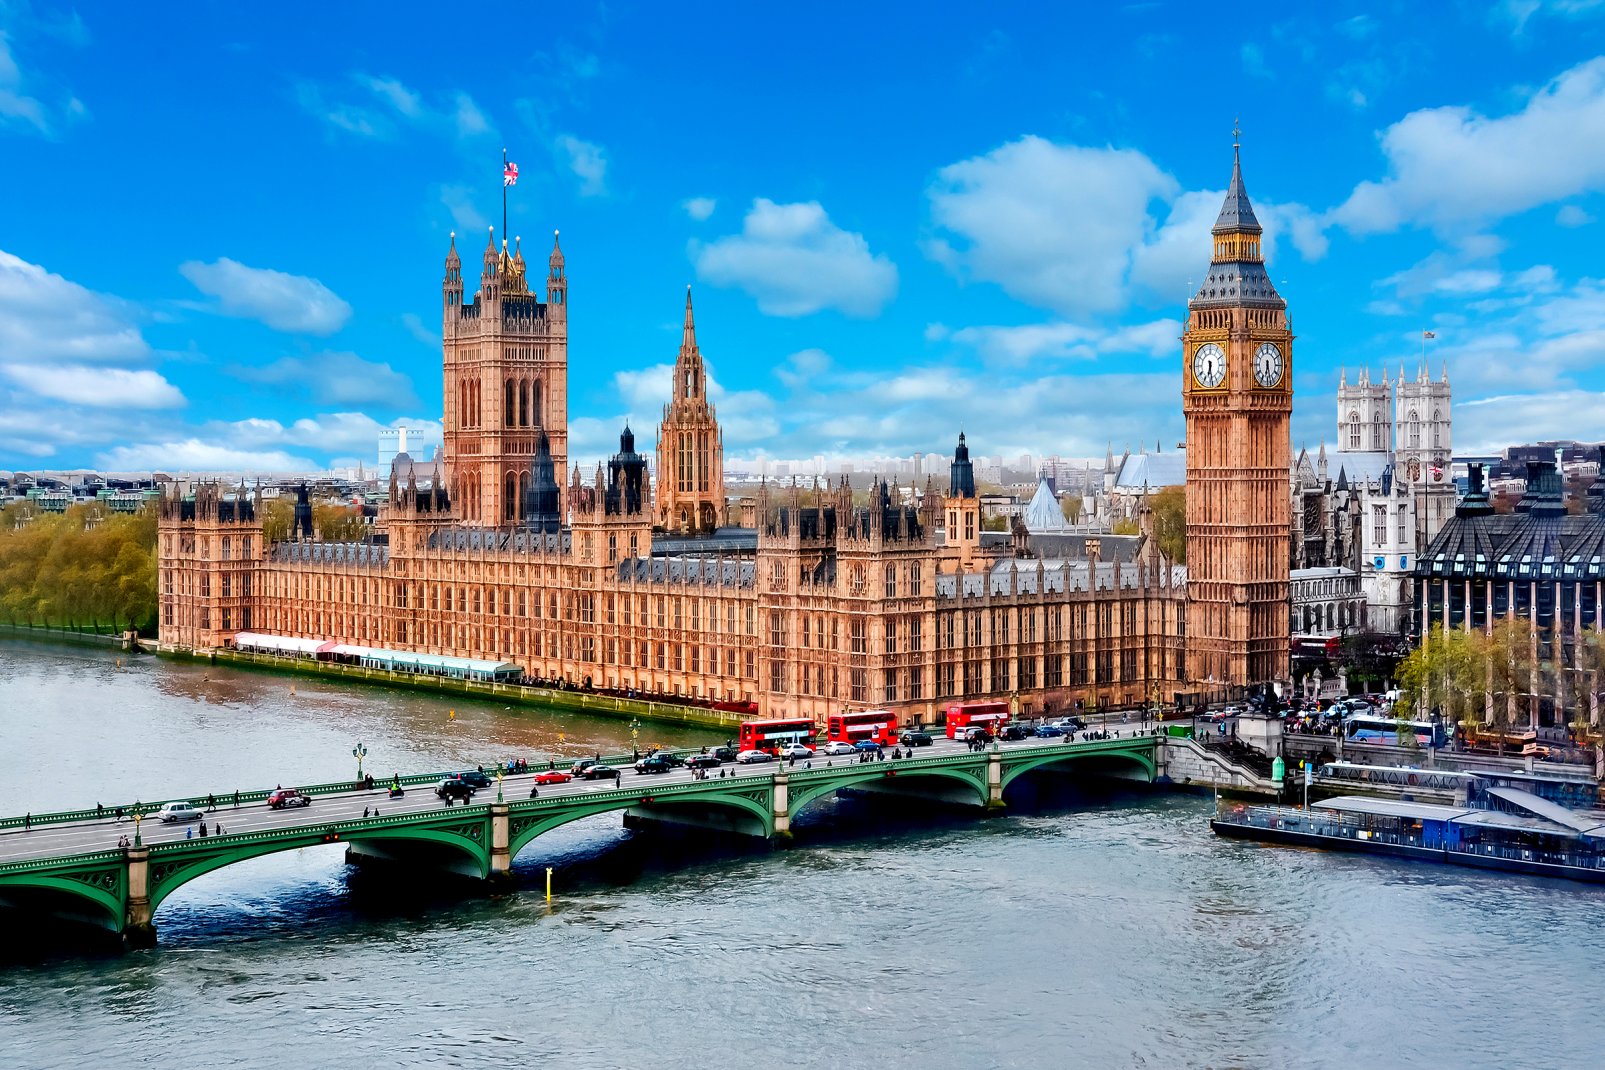 Le pont de Westminster conduit au palais de Westminster et à l'abbaye de Westminster, acollée juste derrière. Le palais de Westminster renferme lles Chambres du Parlement où siège le parlement britannique. Ce lieu,où domine Big Ben, est donc emblématique à plus d'un égard.